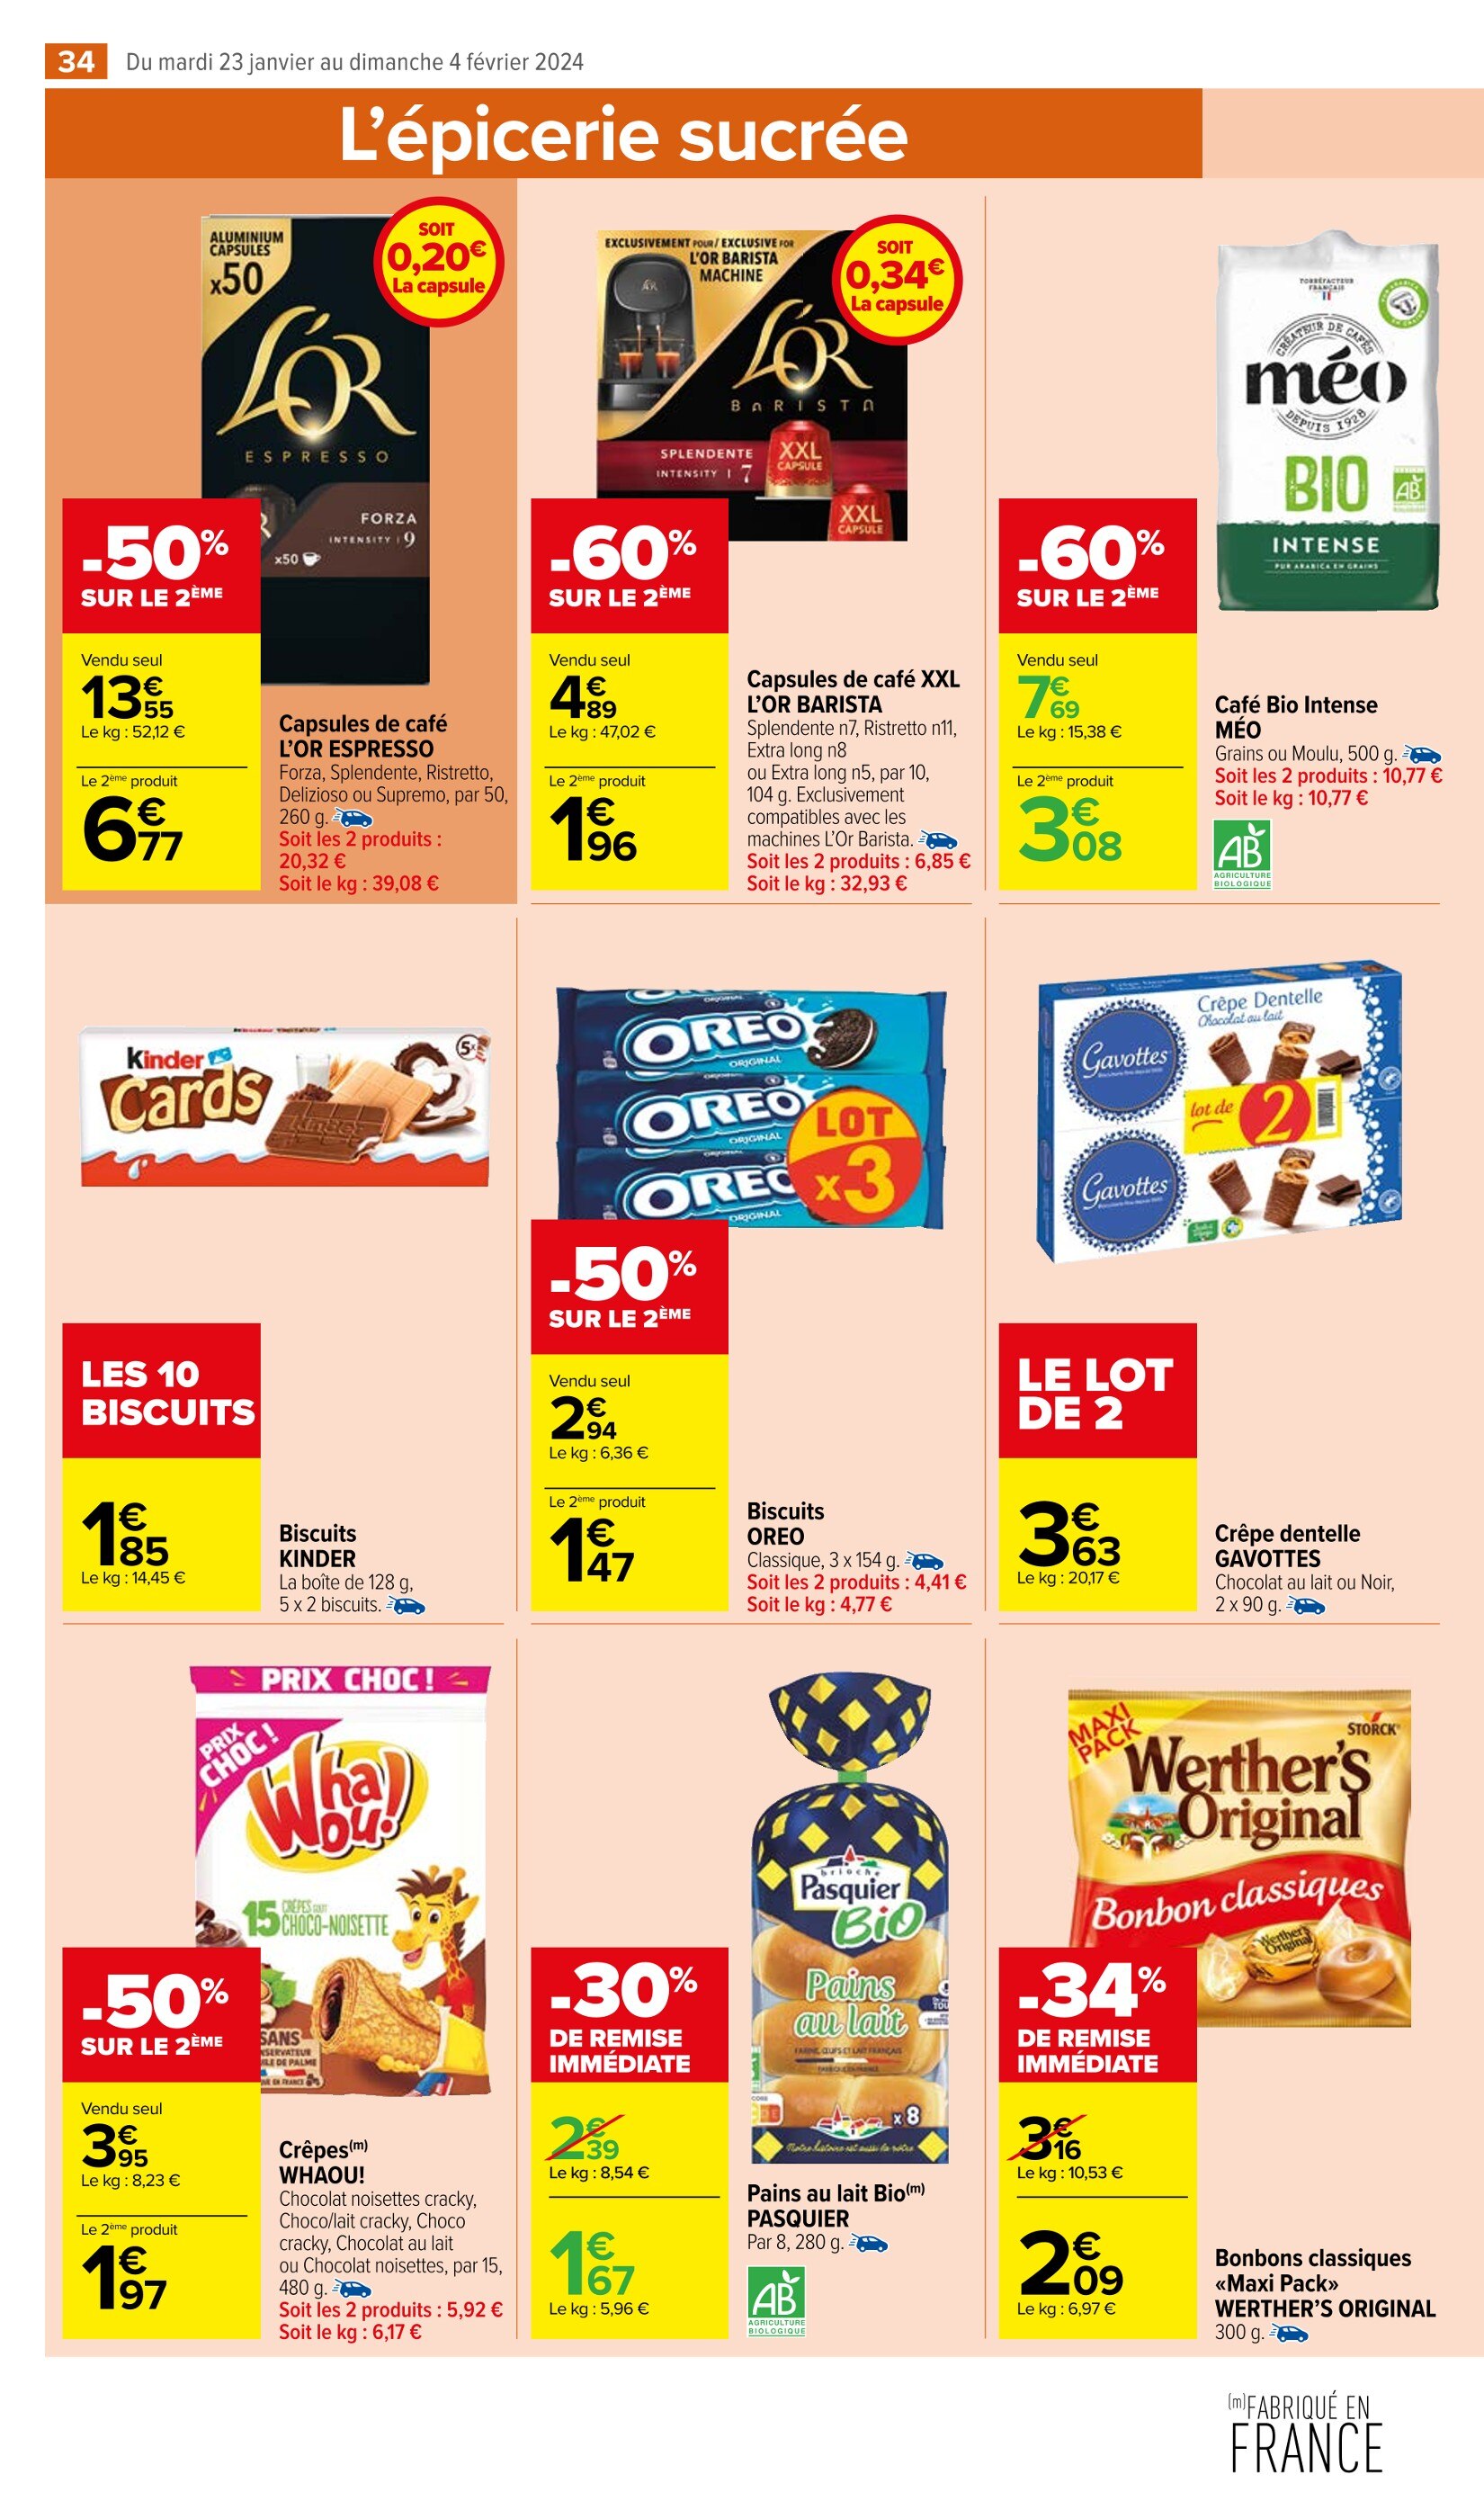 Café Moulu Auchan ᐅ Promos et prix dans le catalogue de la semaine